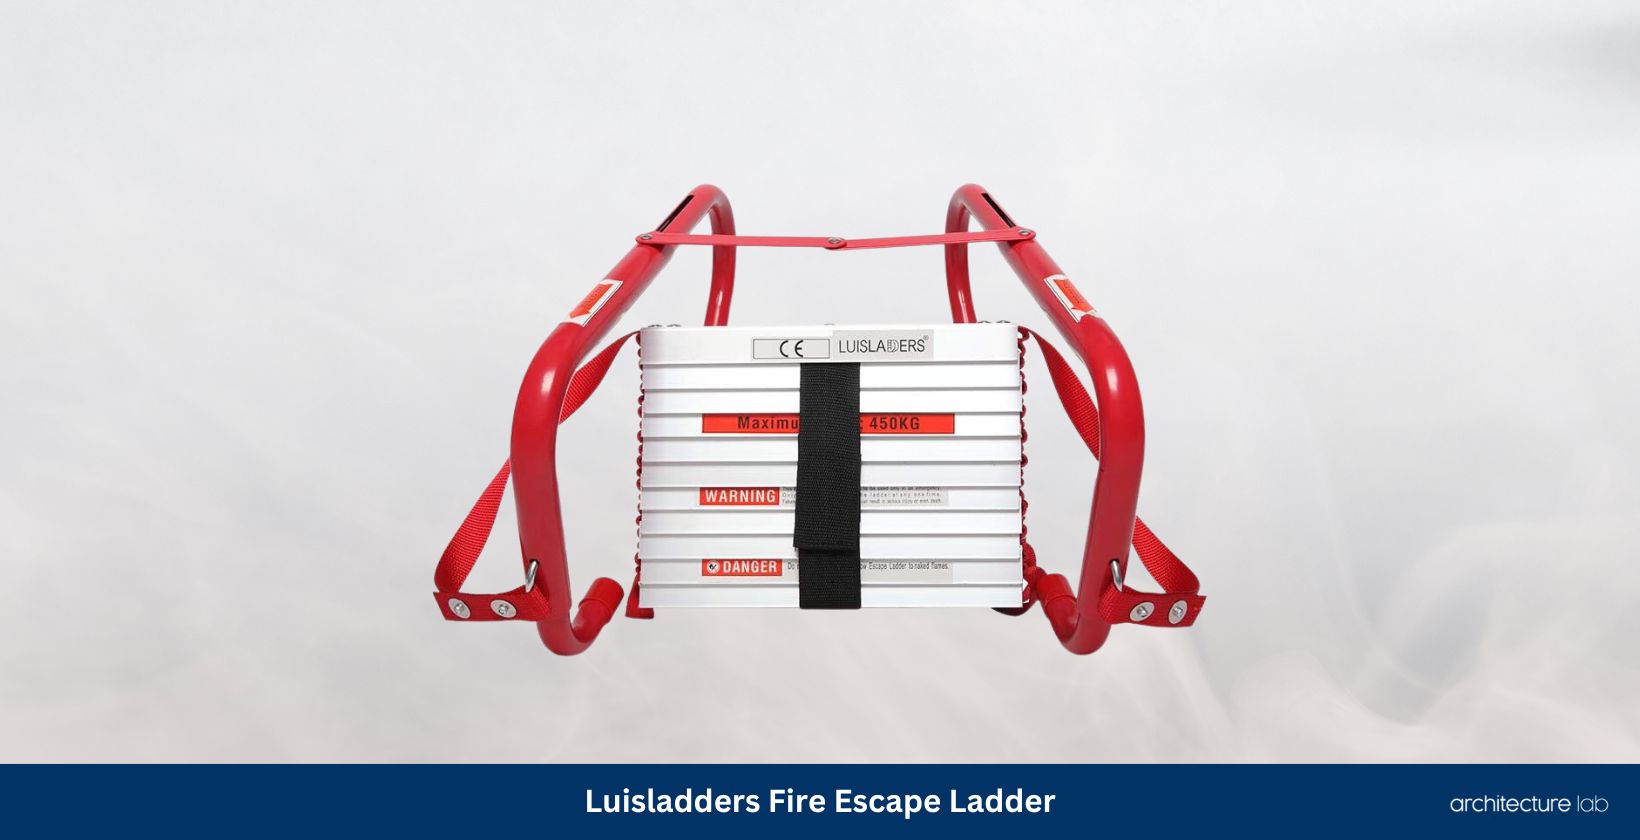 Luisladders fire escape ladder 2 story 15